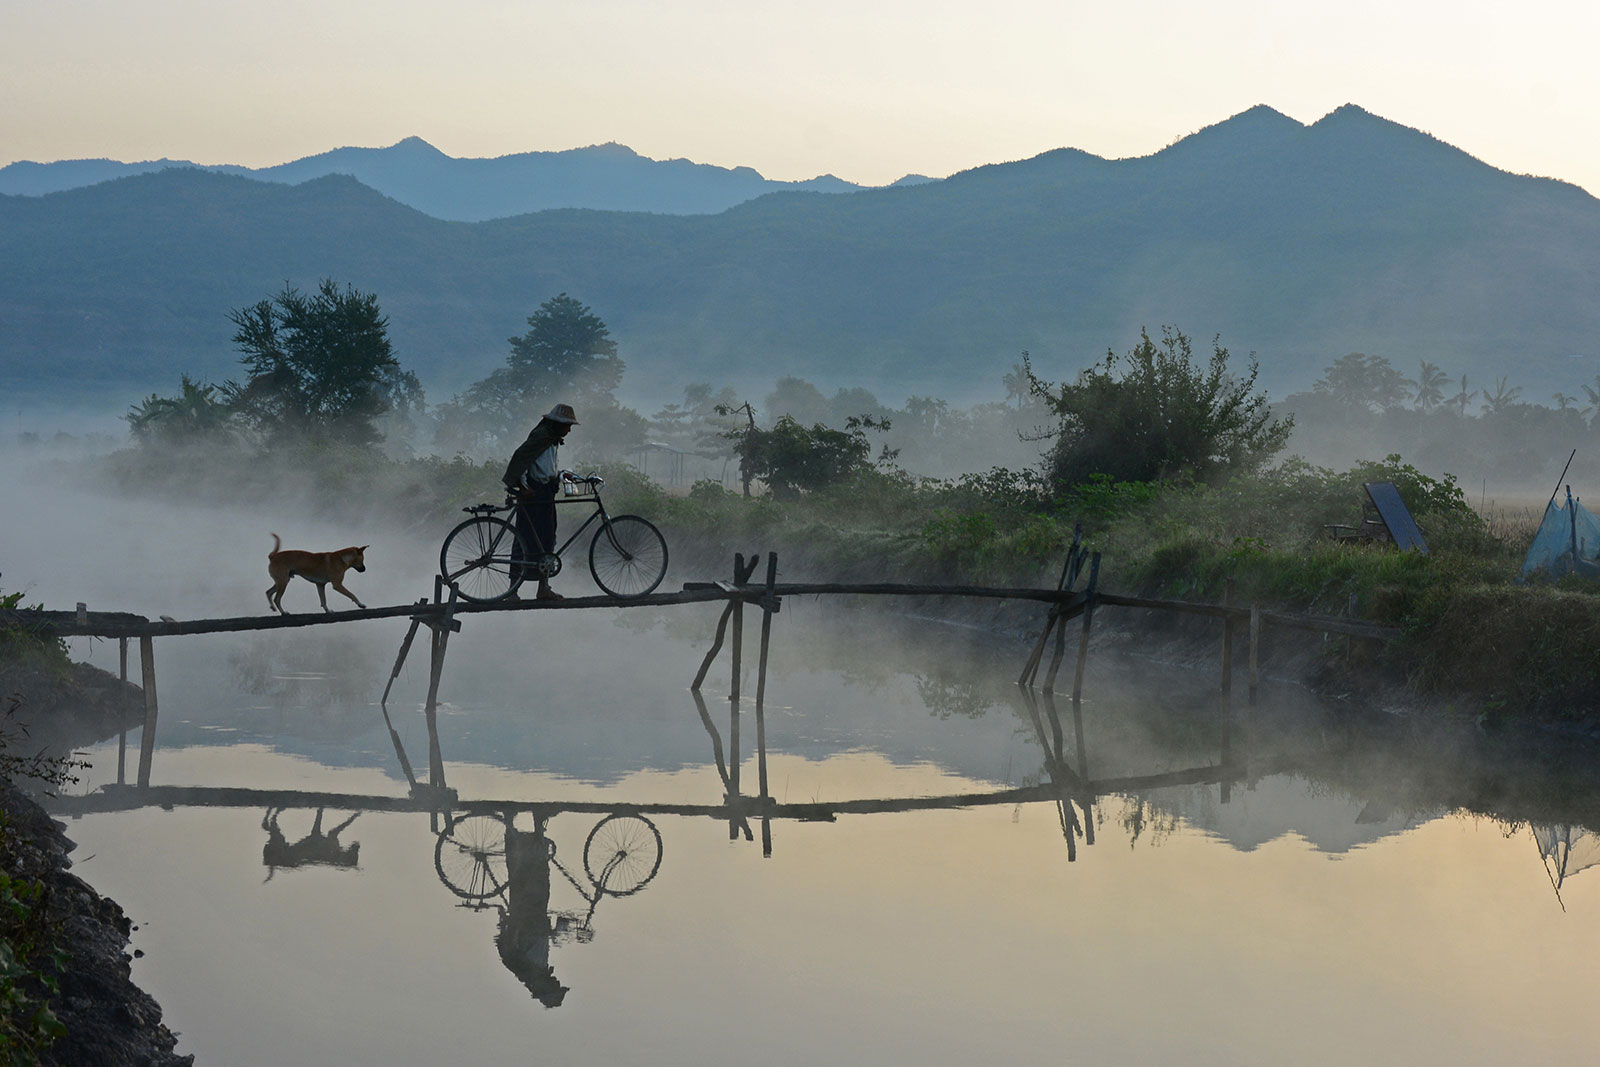 제목 : 안개가 자욱한 아침 |  저자 : Myo Min Kywe |  사용 된 필터 : ND |  국가 : 미얀마